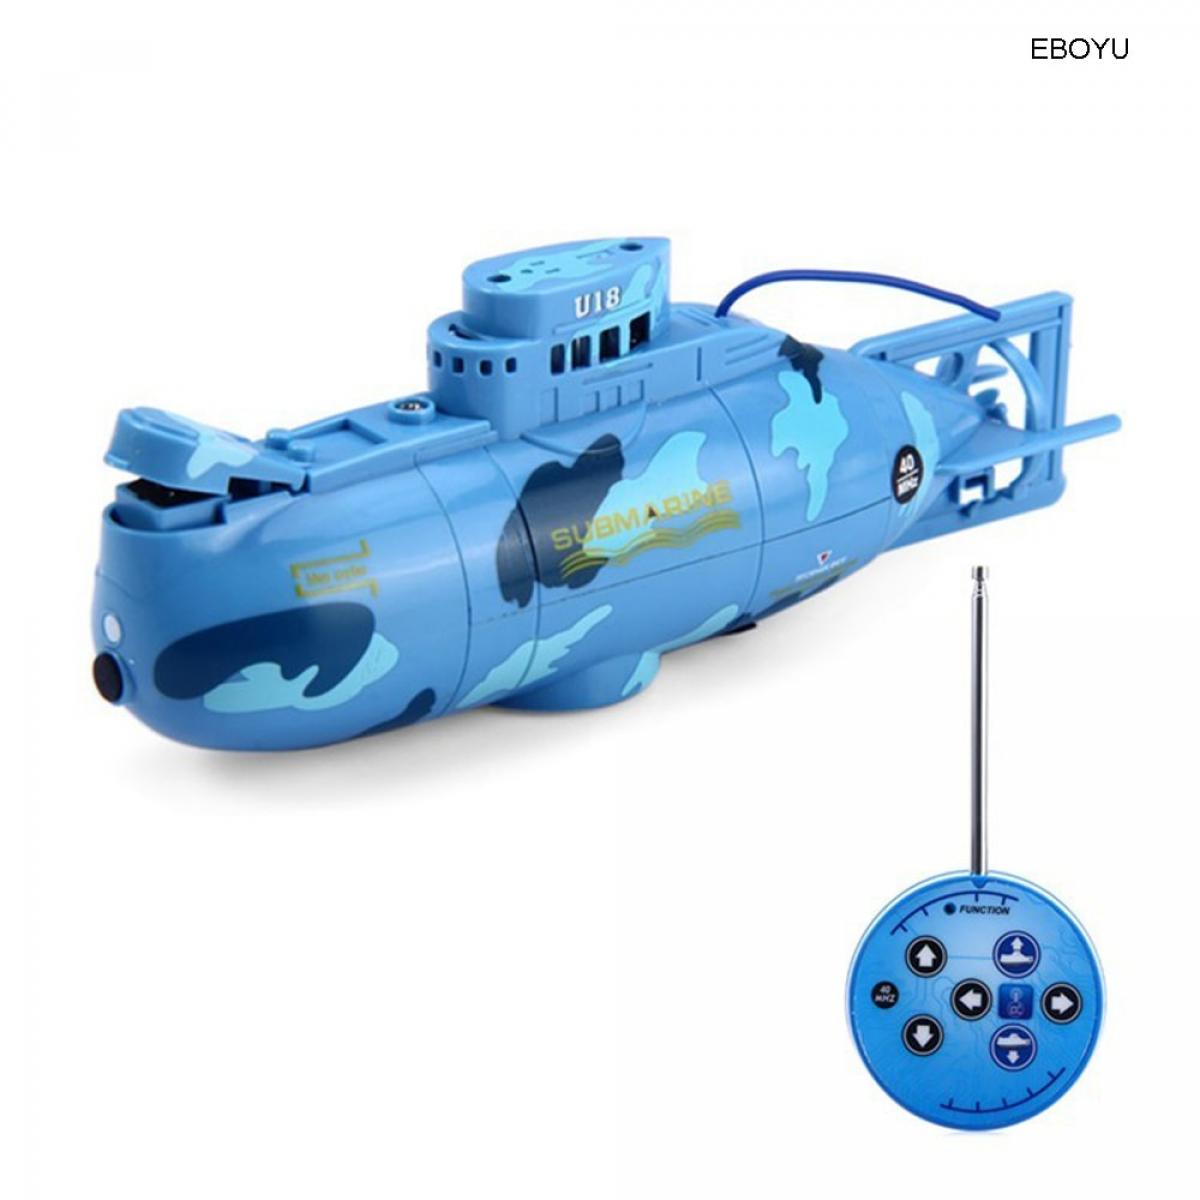 Bateaux RC Universal Vitesse radio télécommande sous-marin électrique mini sous-marin RC jouets pour enfants | sous-marin RC | micro-sous-marin de plongée mécanisme de contrôle jouets sous-marins(Bleu)